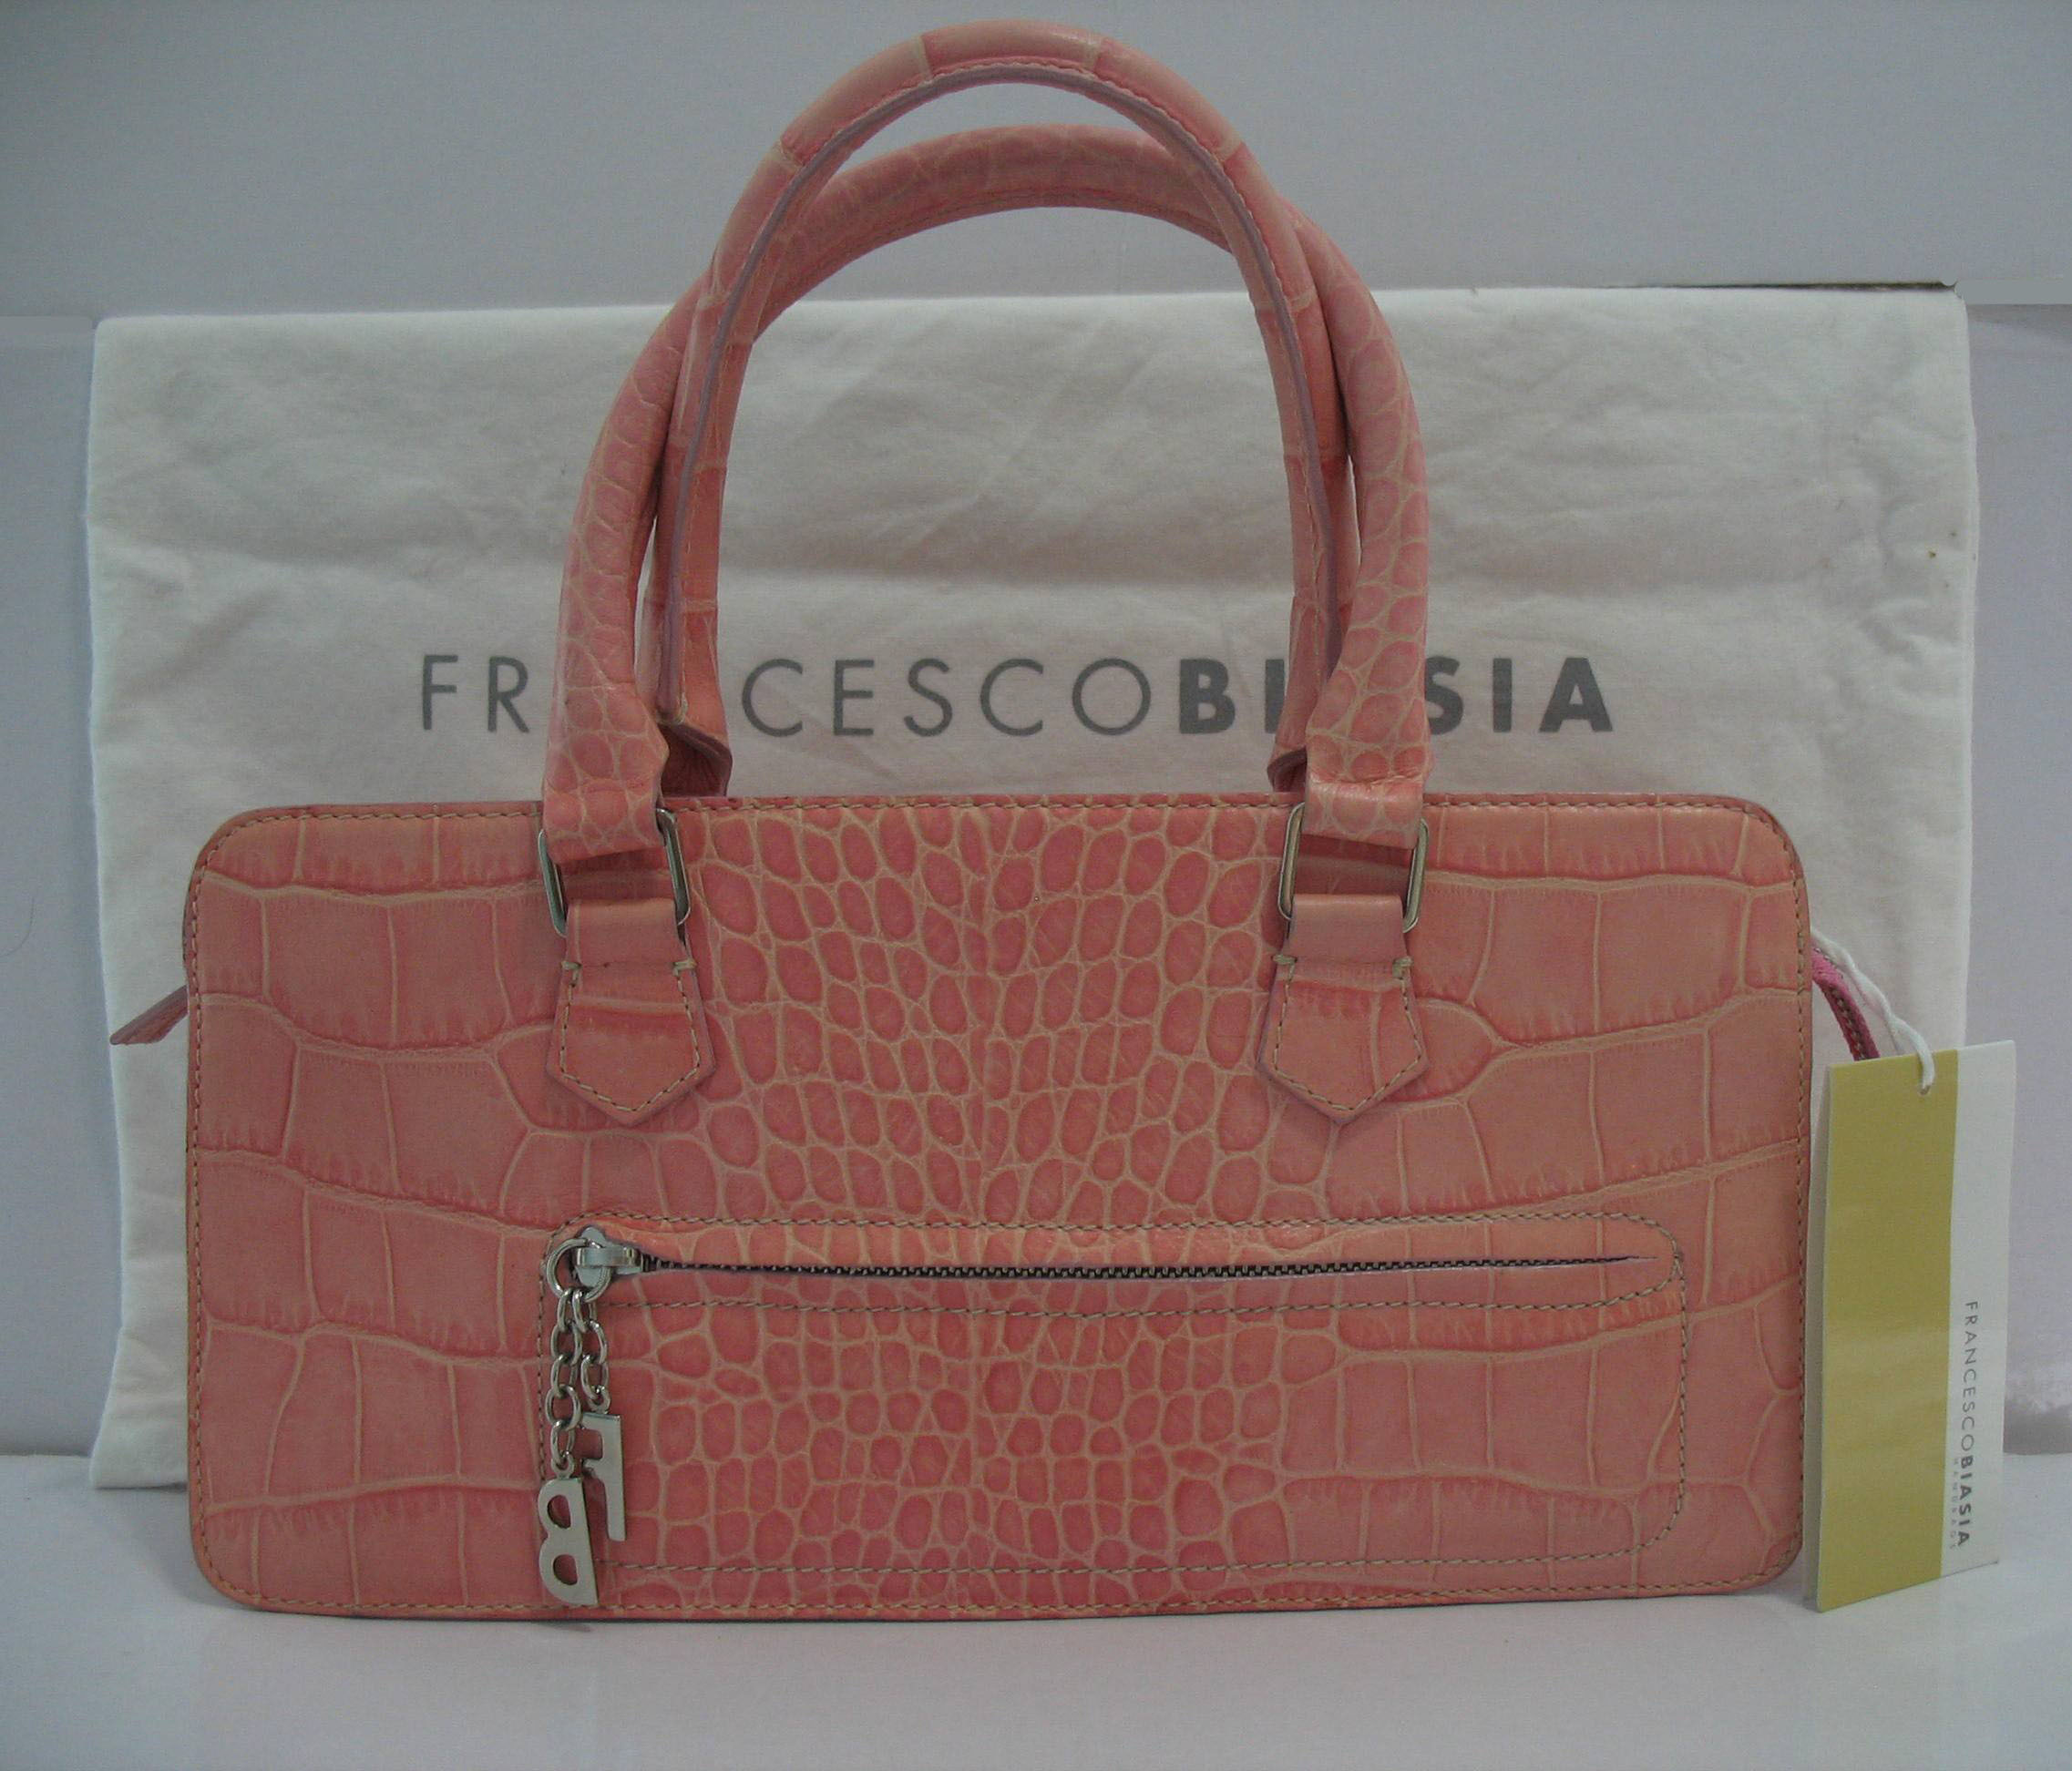 英国购全新正品 FRANCESCO BIASIA 女包 粉色鳄鱼纹手提包 附吊牌折扣优惠信息